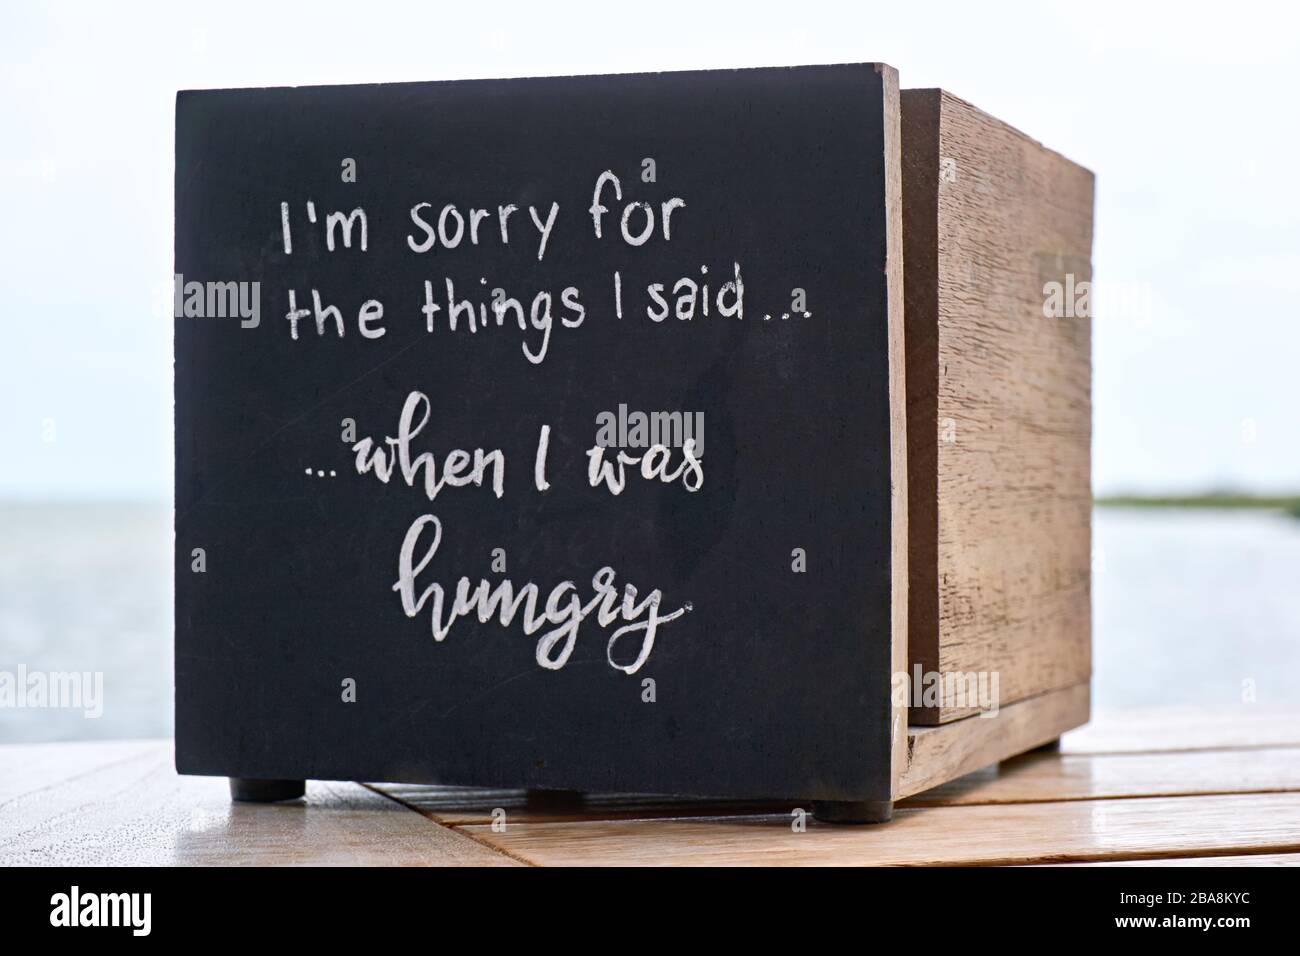 Box in legno in un ristorante con testo o citazione. Mi dispiace per le cose che ho detto, quando avevo fame. Foto Stock